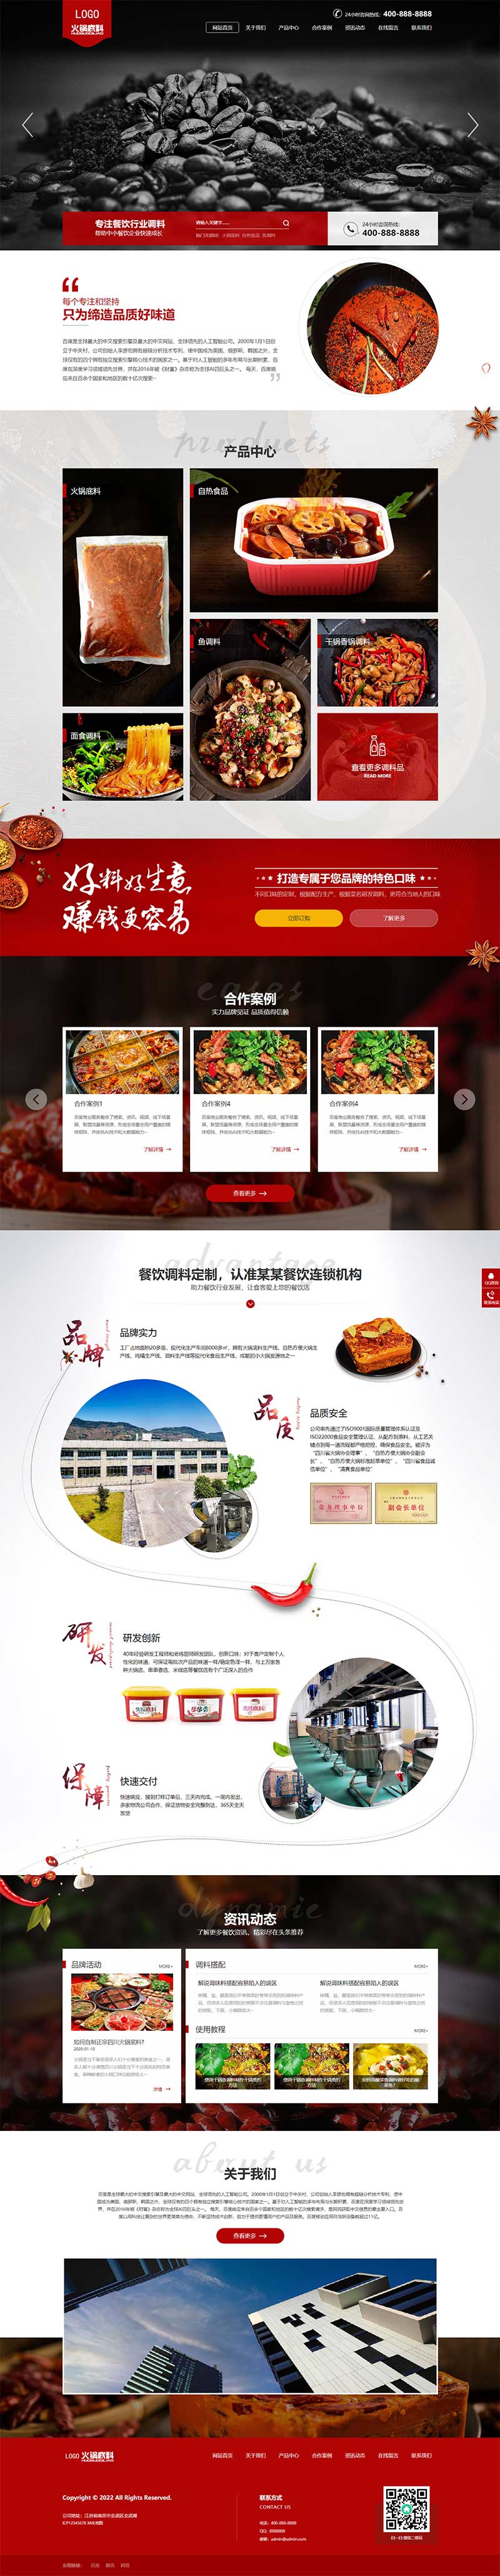 PbootCms模板 红黑色火锅底料餐饮美食网站模板